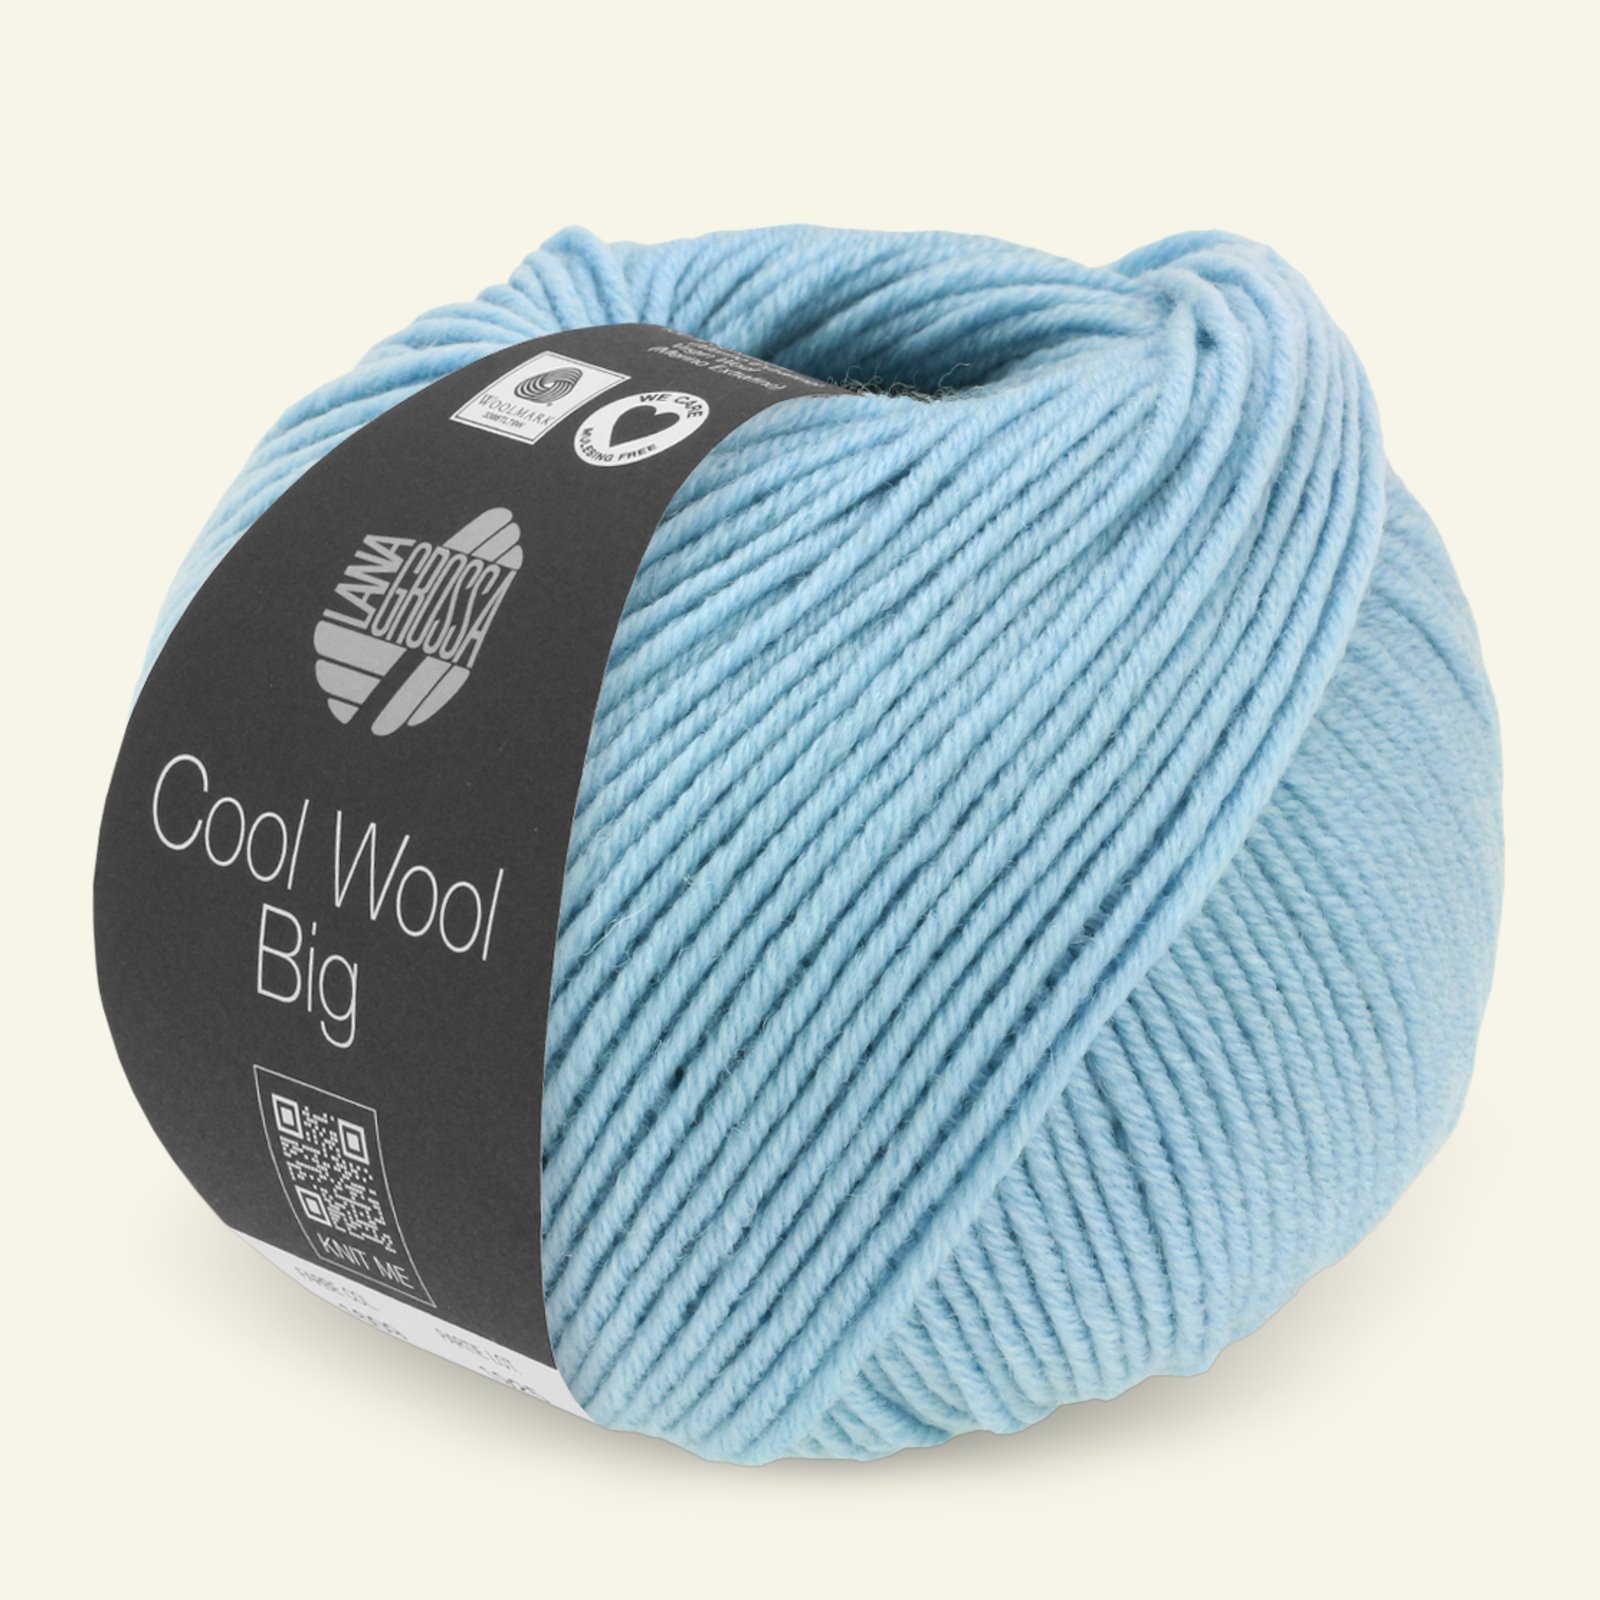 Lana Grossa, extrafine merino ullgarn "Cool Wool Big", ljusblå mel. 90001089_pack